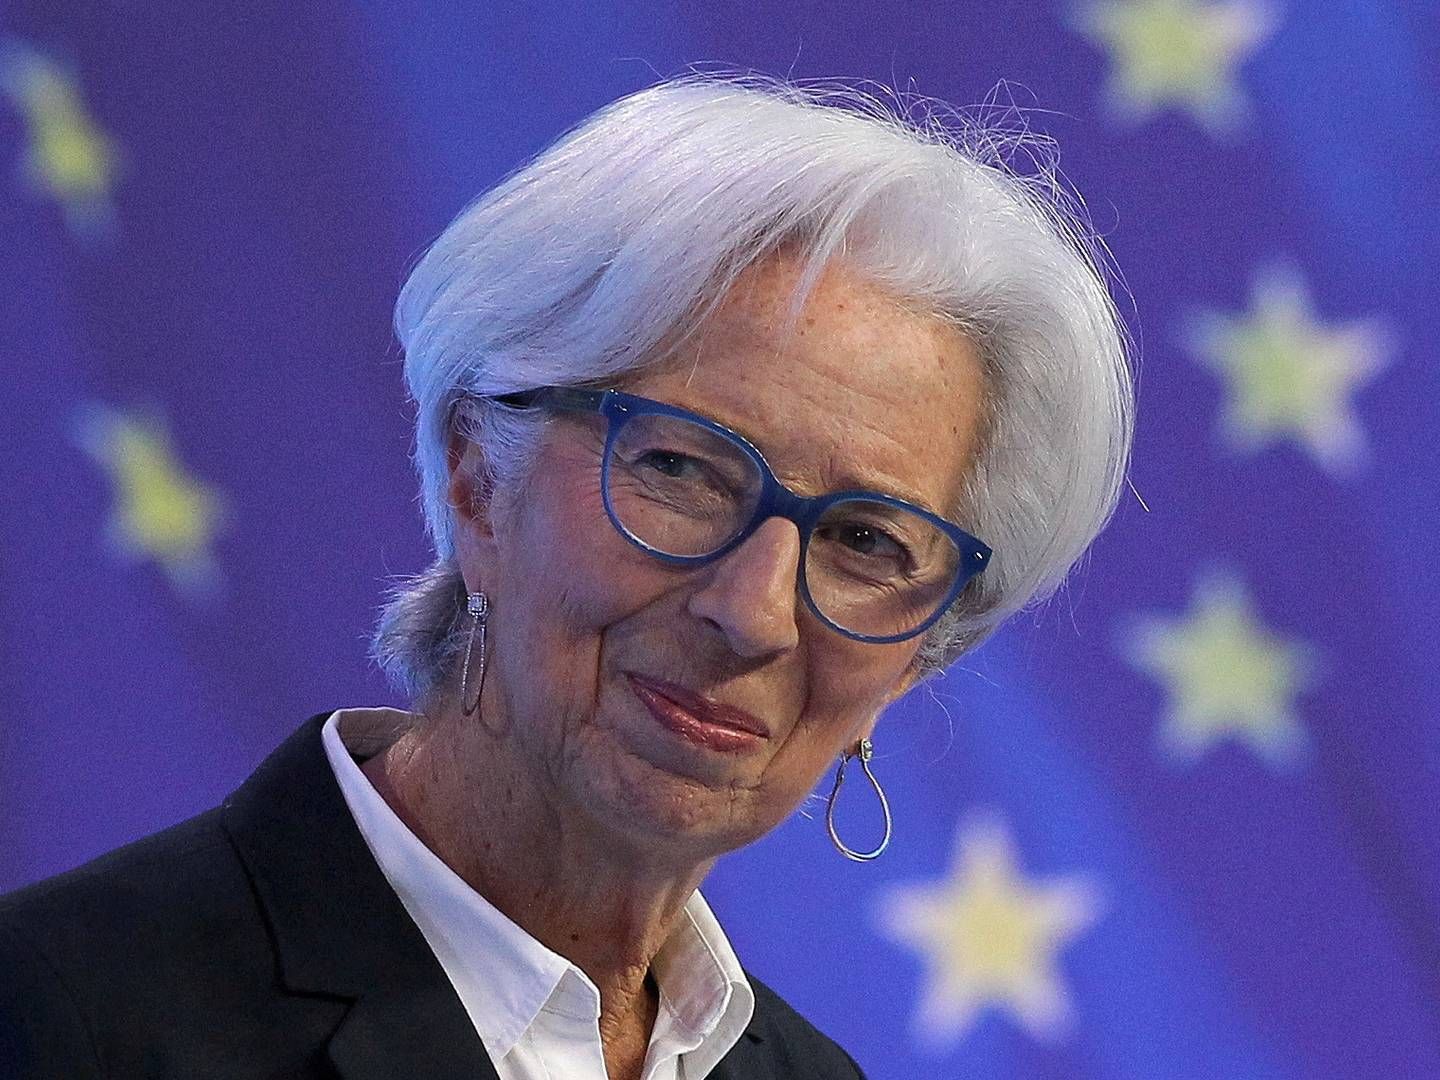 Chefen for Den Europæiske Centralbank, Christine Lagarde, ventes torsdag at annoncere den første renteforhøjelse i eurozonen i 11 år. | Foto: POOL/REUTERS / X80003